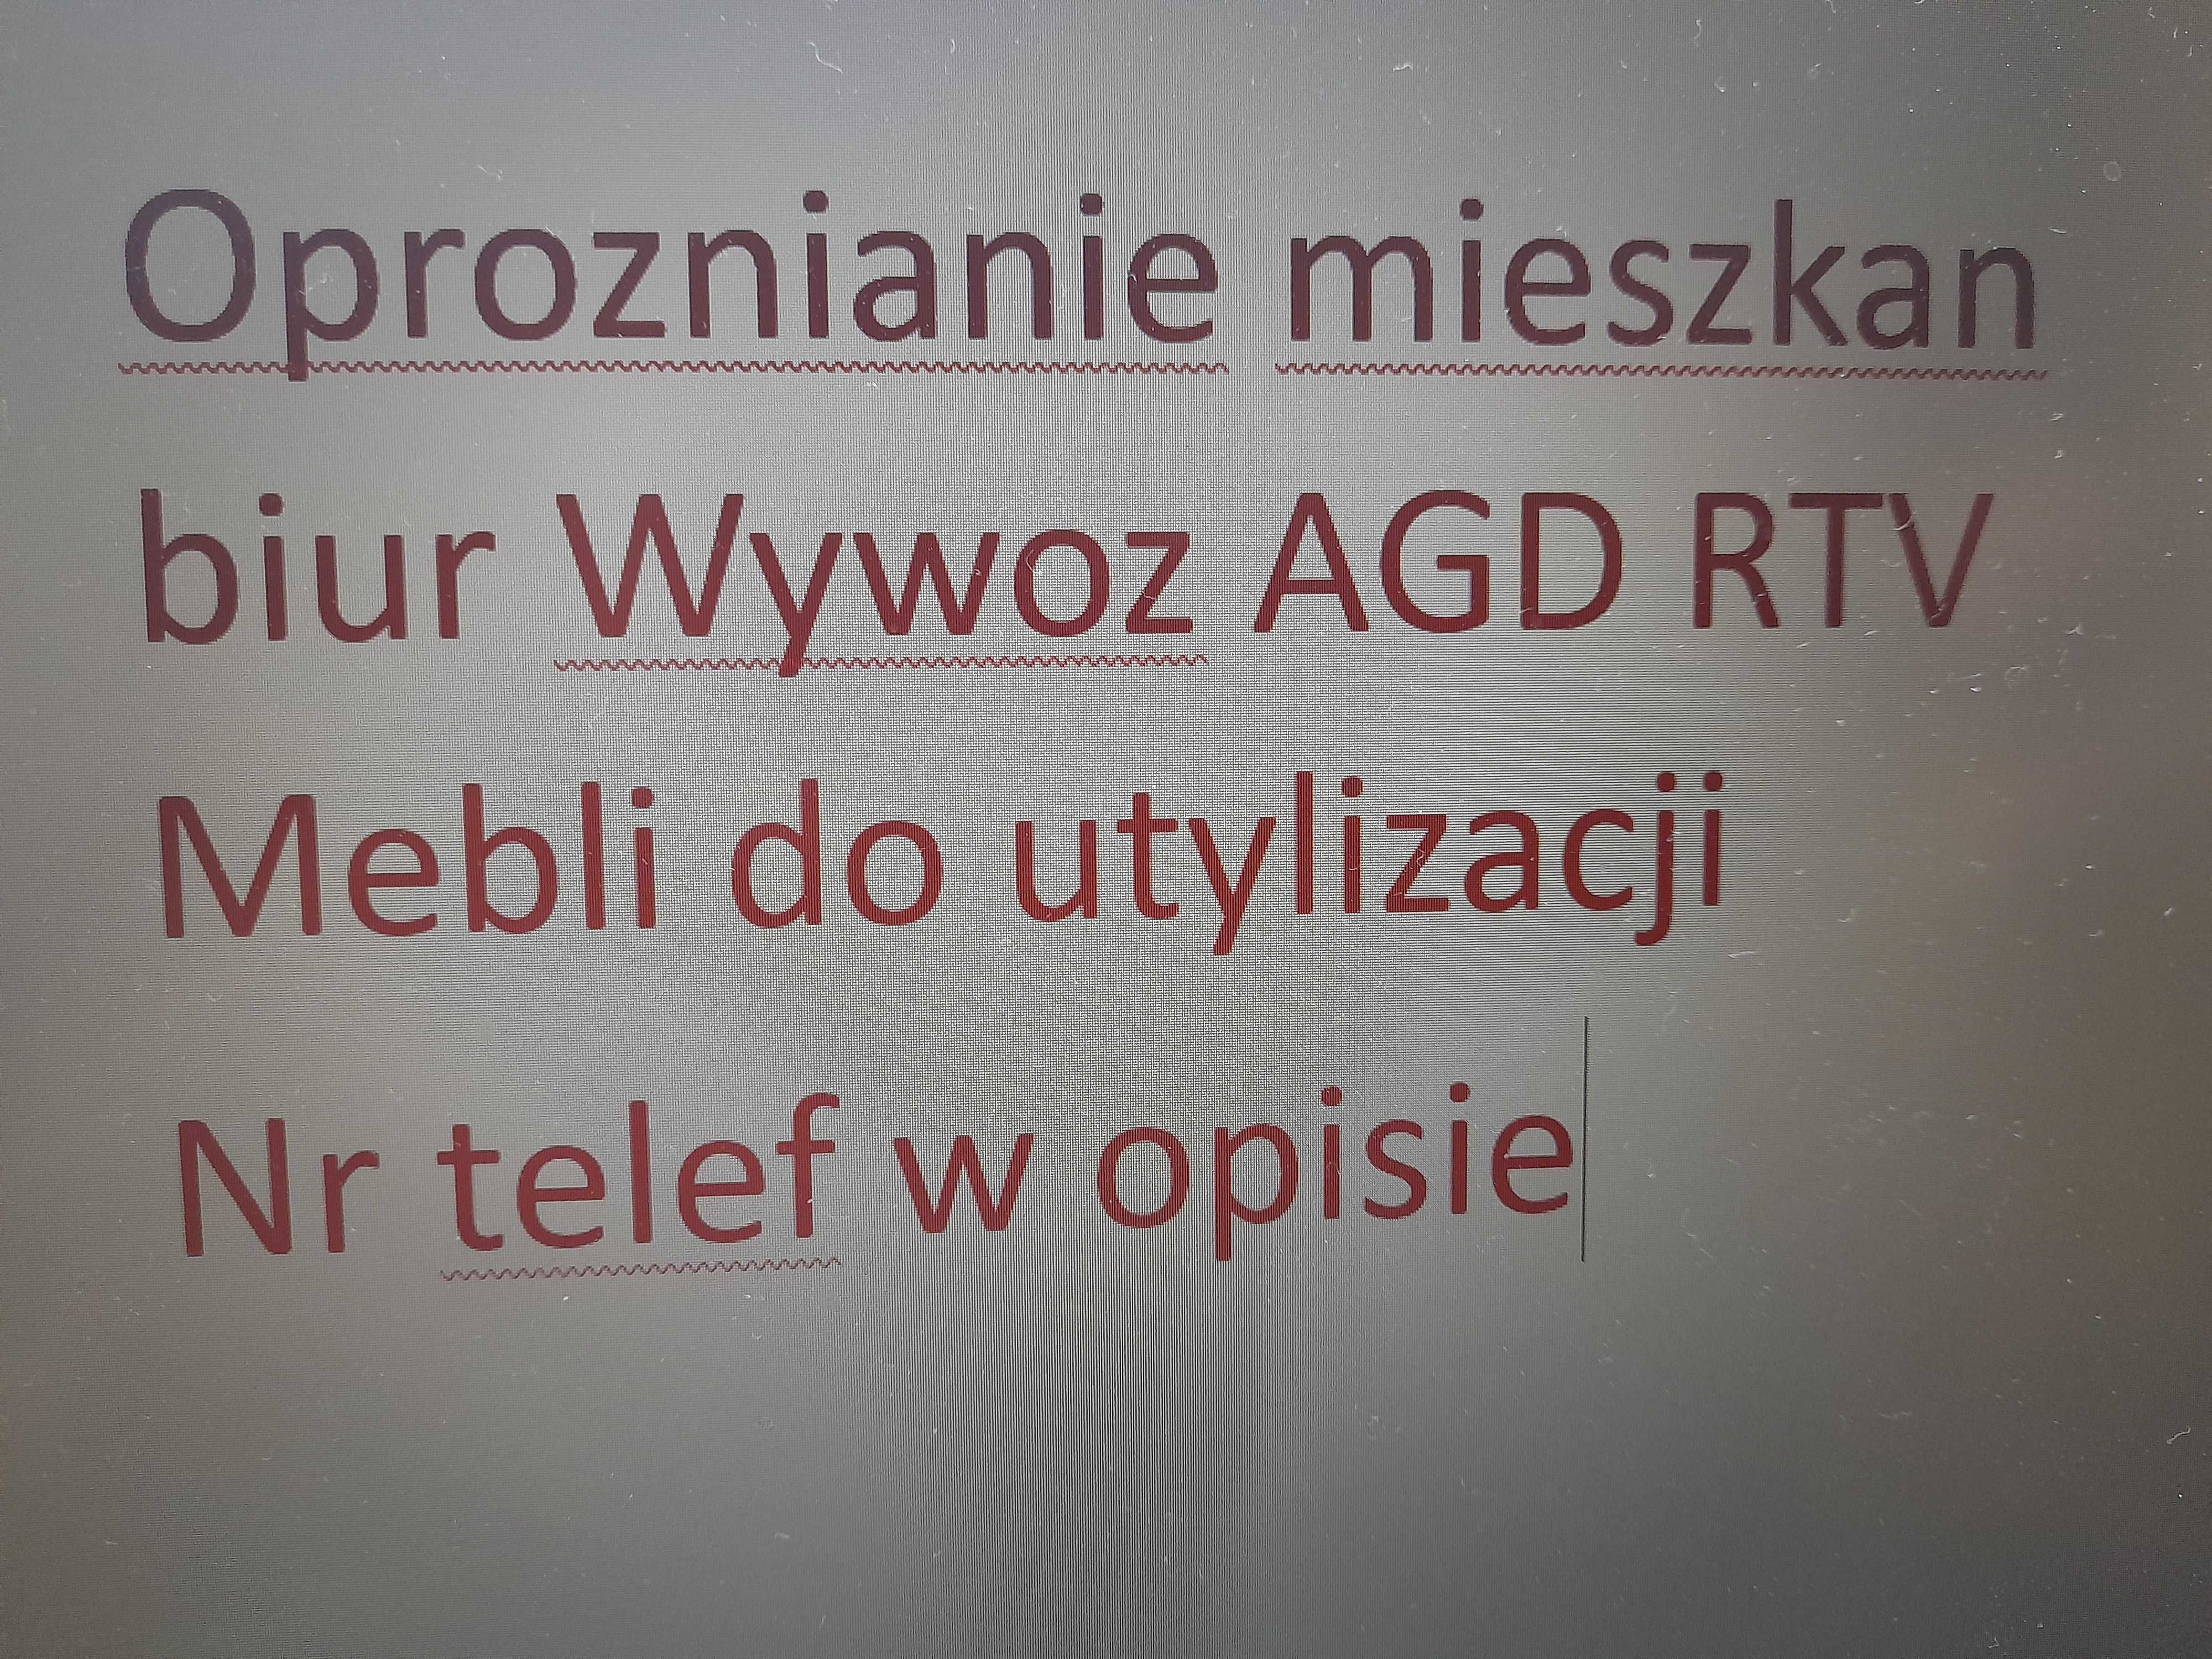 Oproznianie mieszkan biur Wywoz AGD RTV Mebli do utylizacji Bedzin